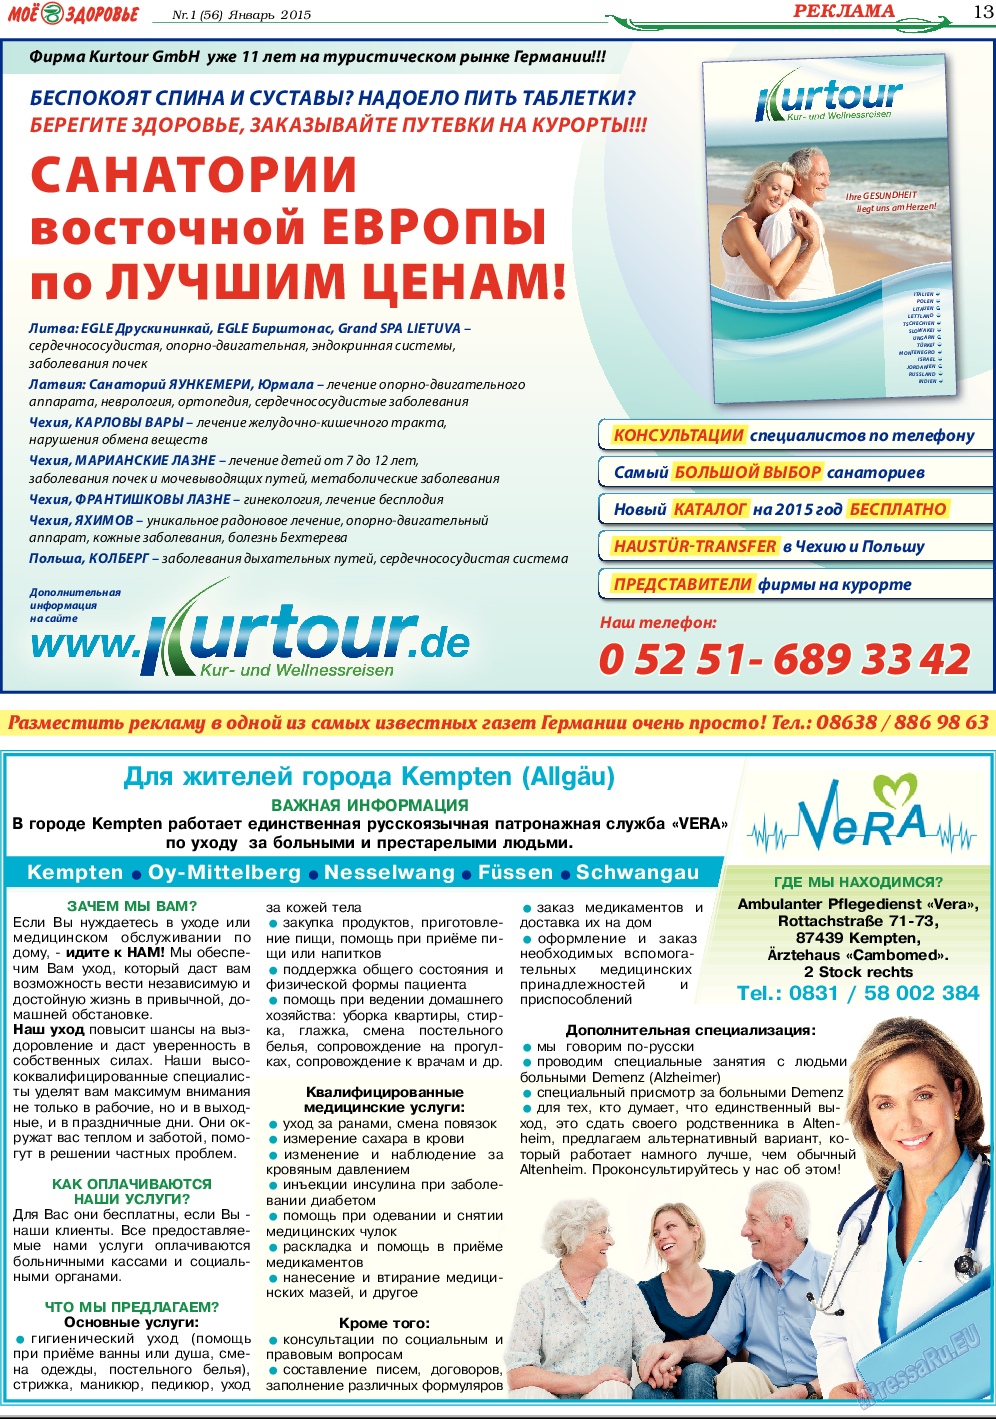 Кругозор, газета. 2015 №1 стр.13